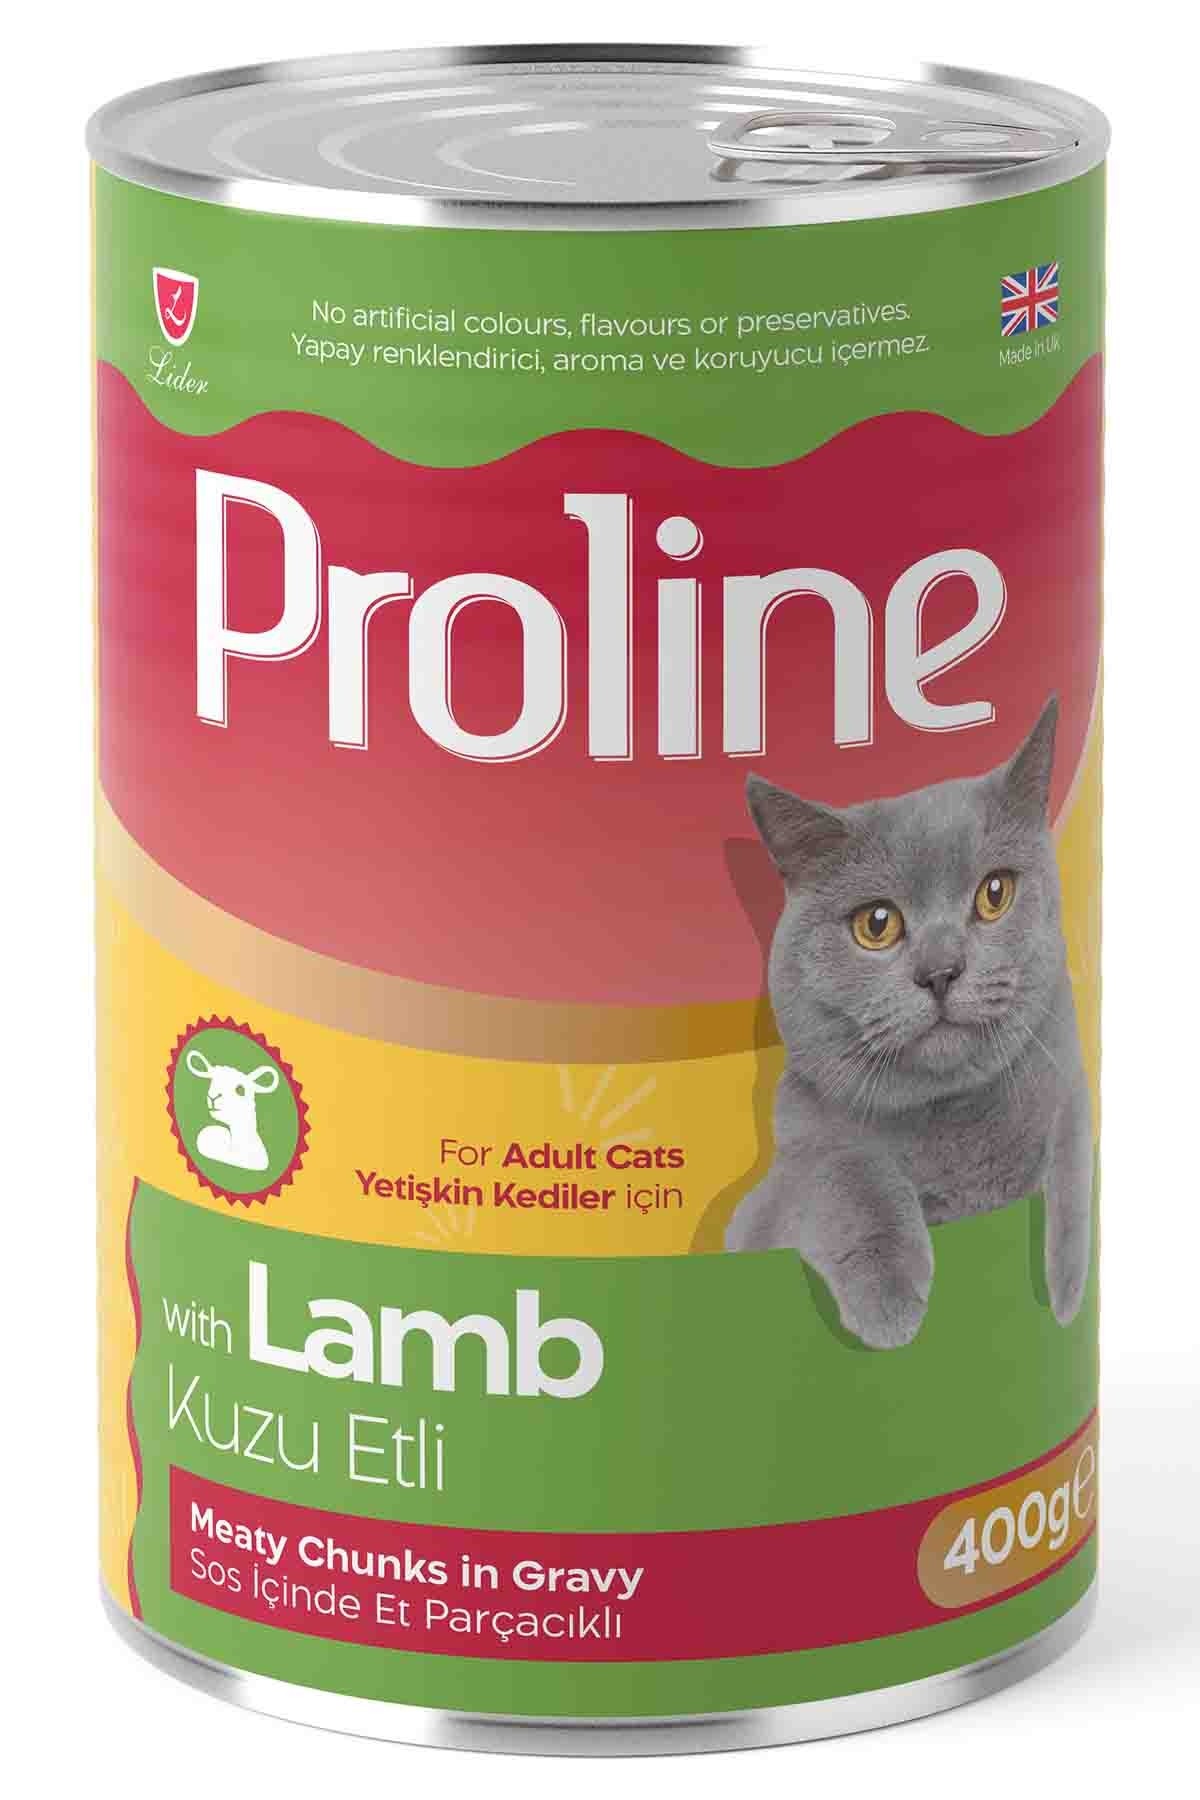 Proline Sos İçinde Et Parçacıklı Kuzu Etli Yetişkin Kedi Konservesi 400 Gr